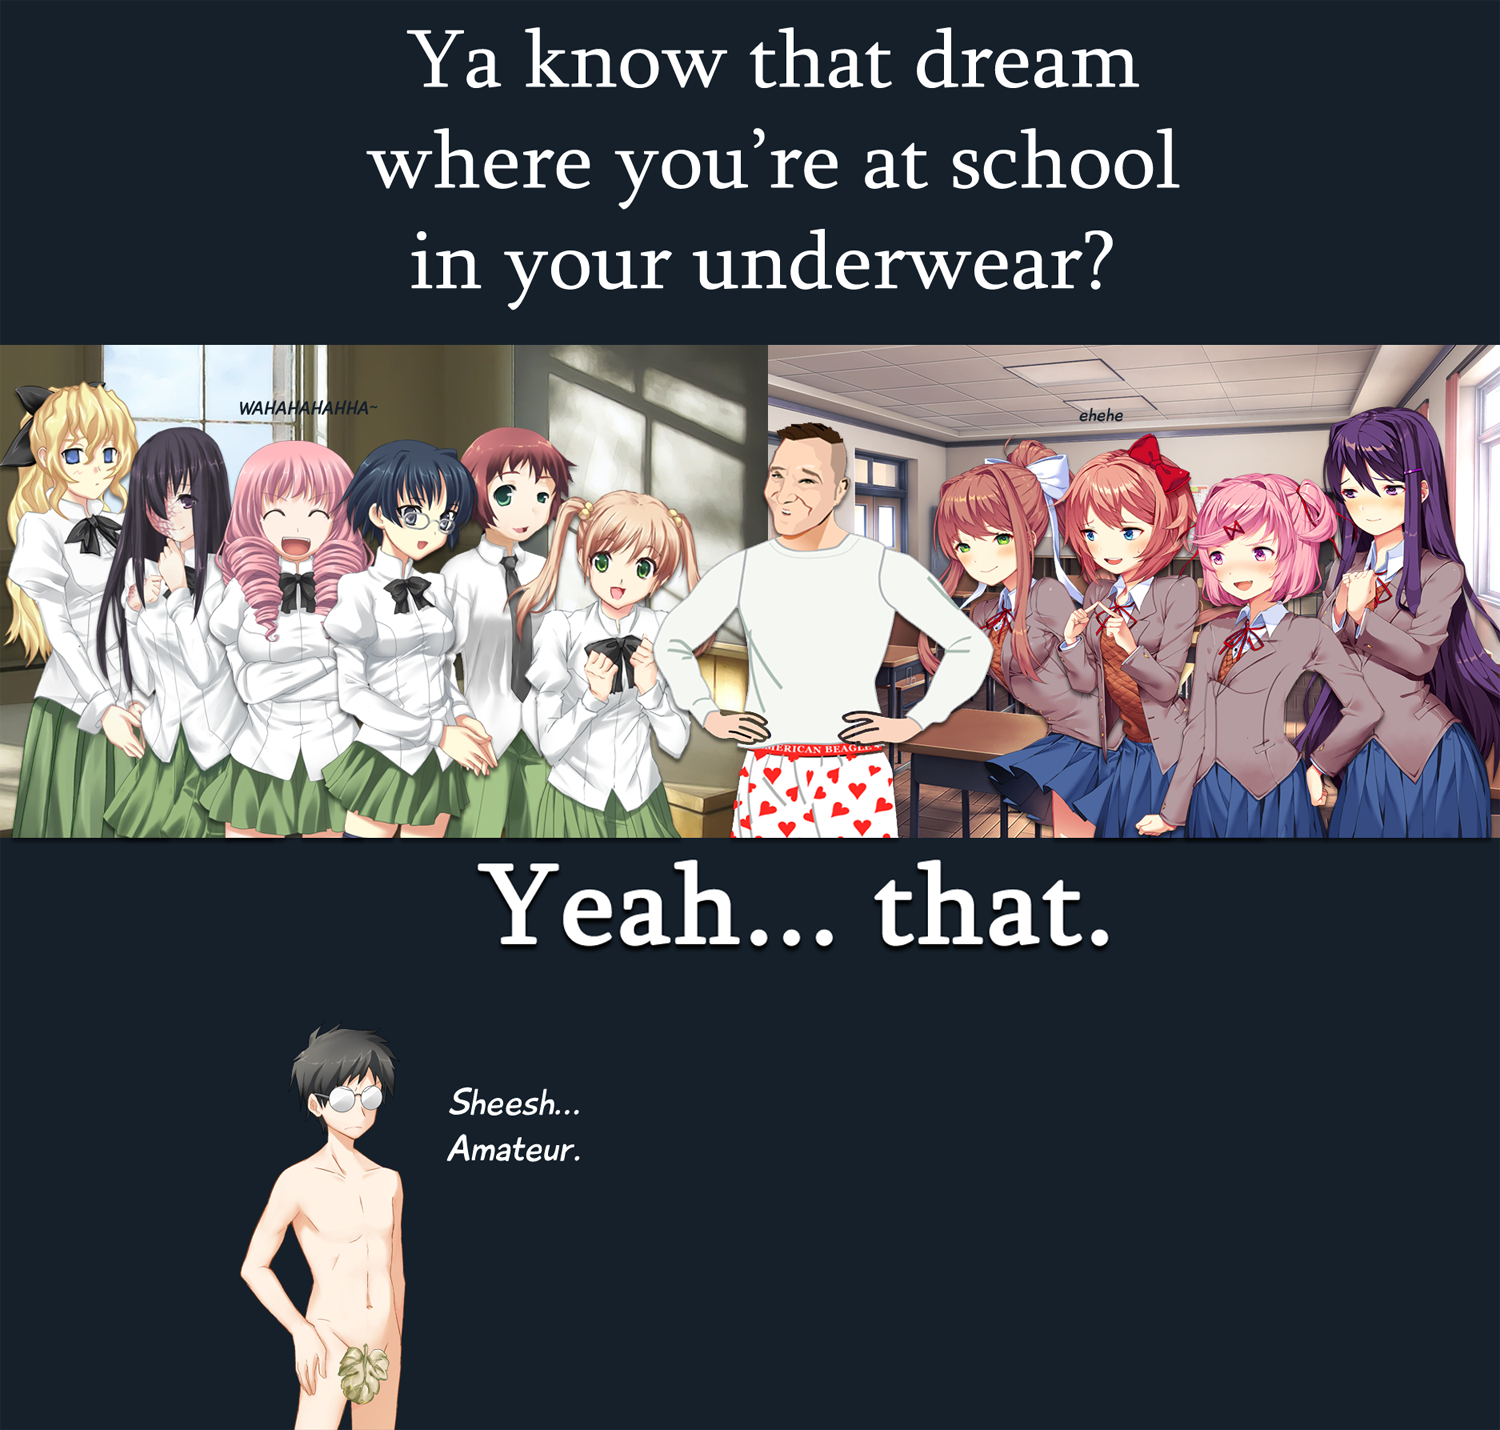 underwear-deam2.png